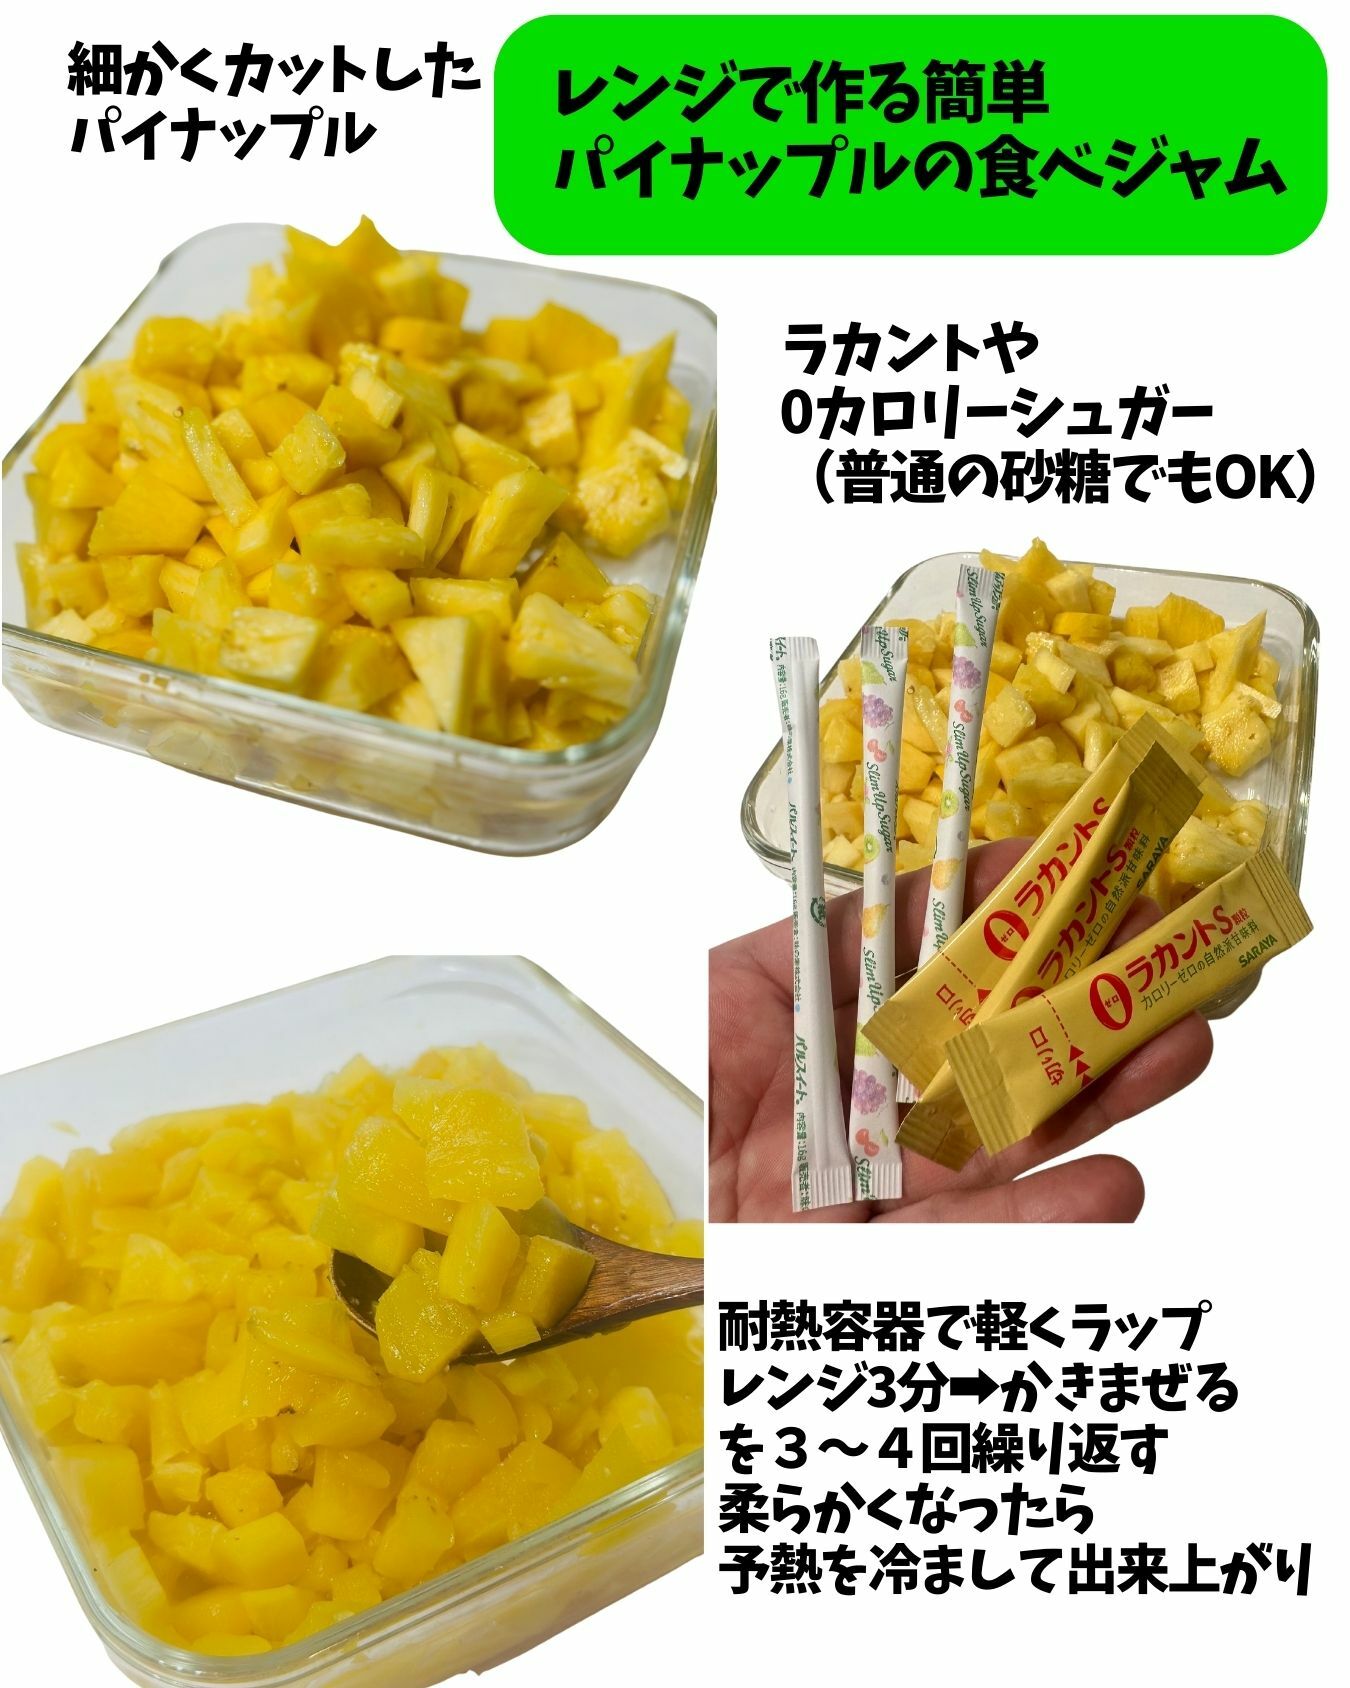 【コストコ】カットパイナップルでレンチンジャム作り